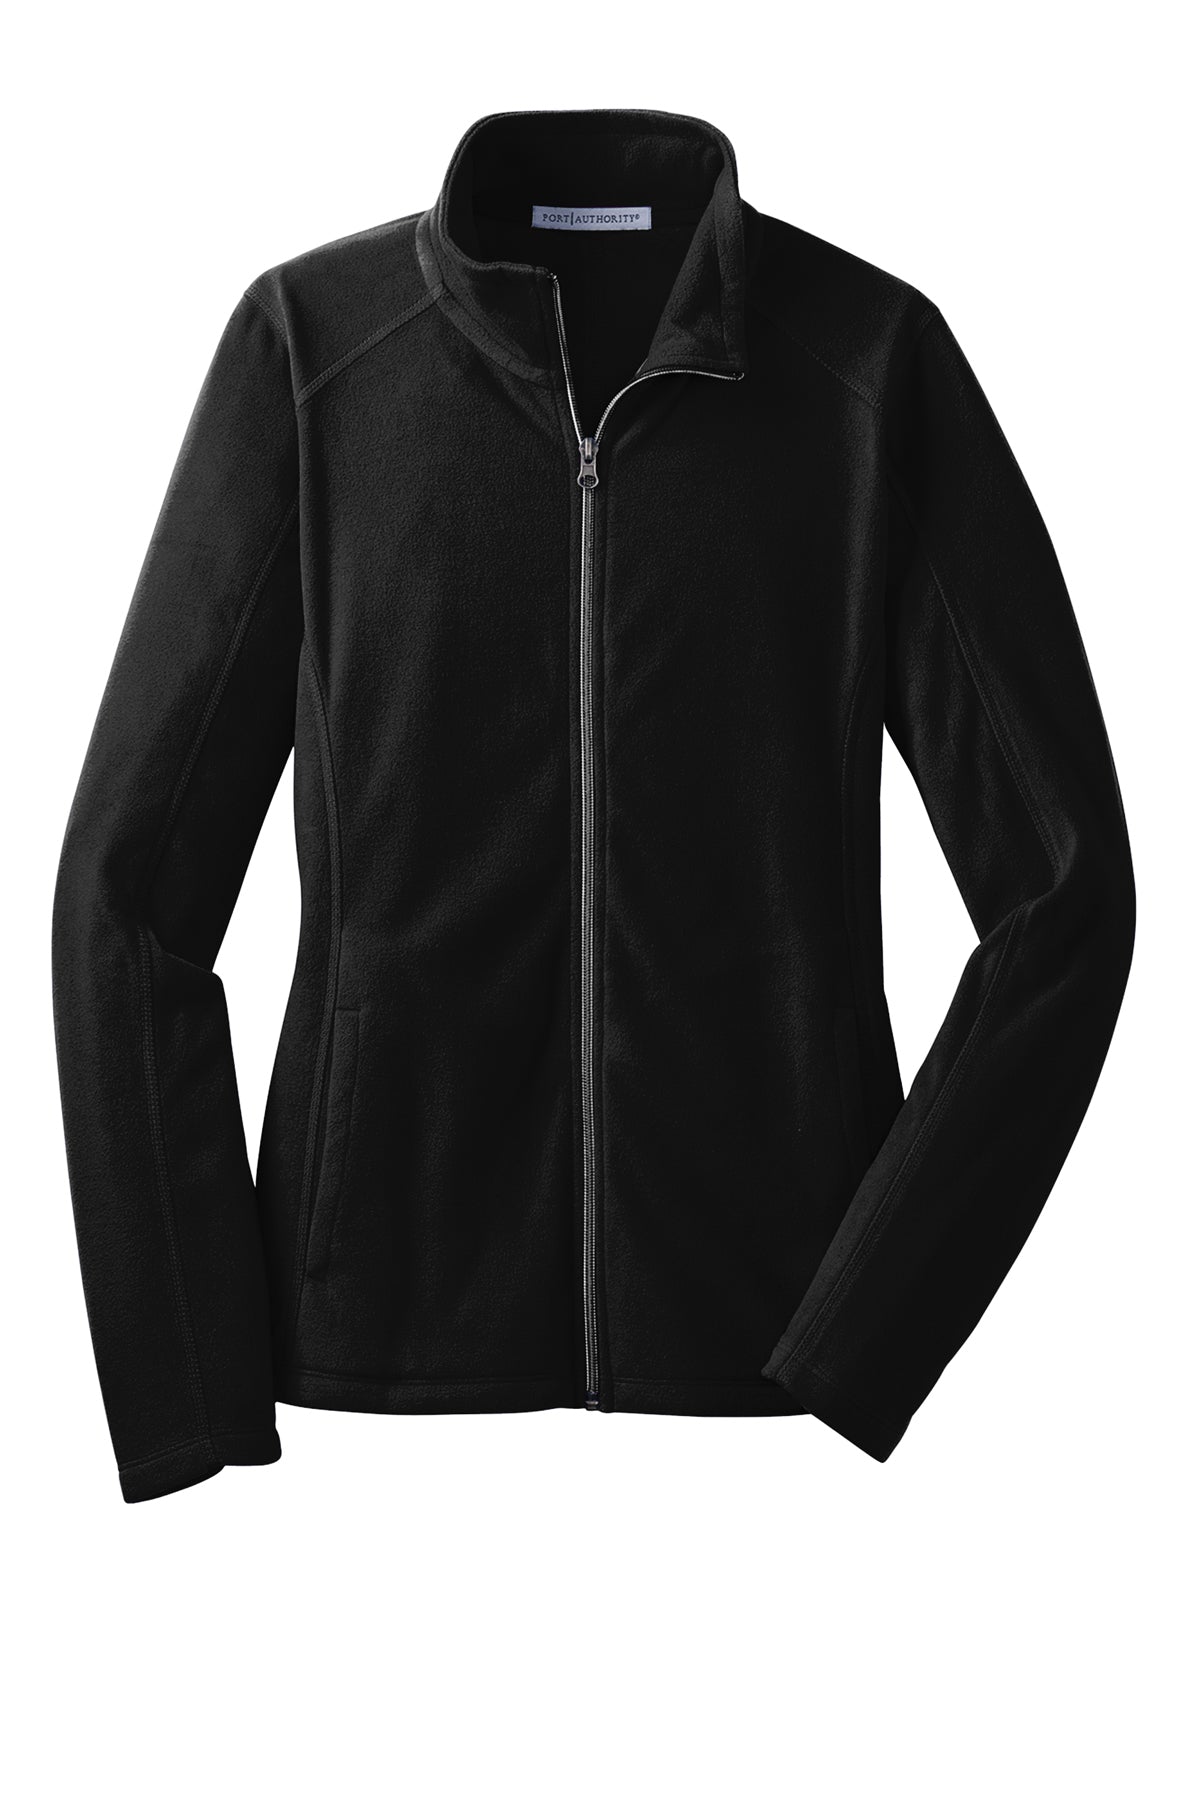 Port Authority® Ladies Microfleece Jacket